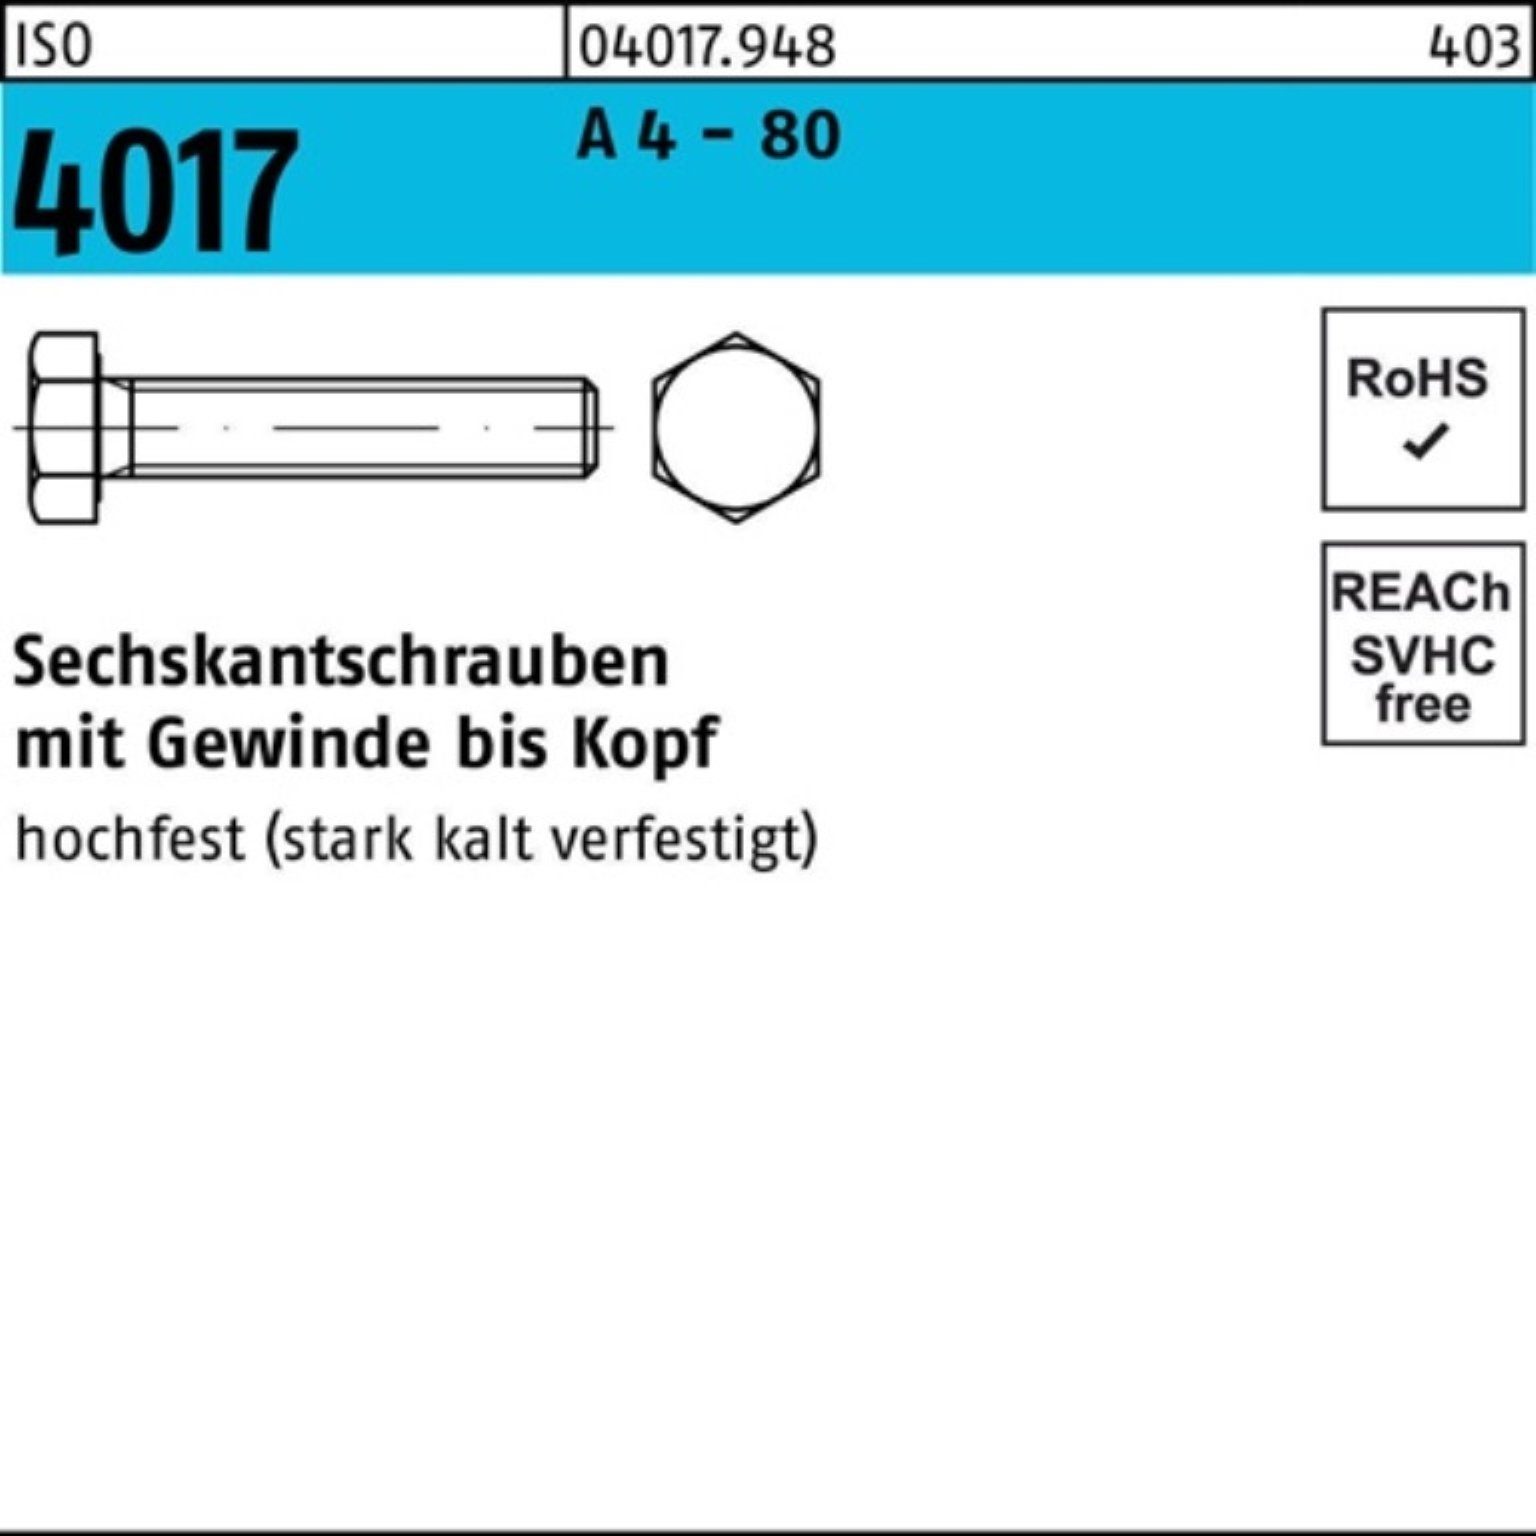 Bufab Sechskantschraube 100er Pack Sechskantschraube ISO 4017 VG M6x 20 A 4 - 80 100 Stück IS